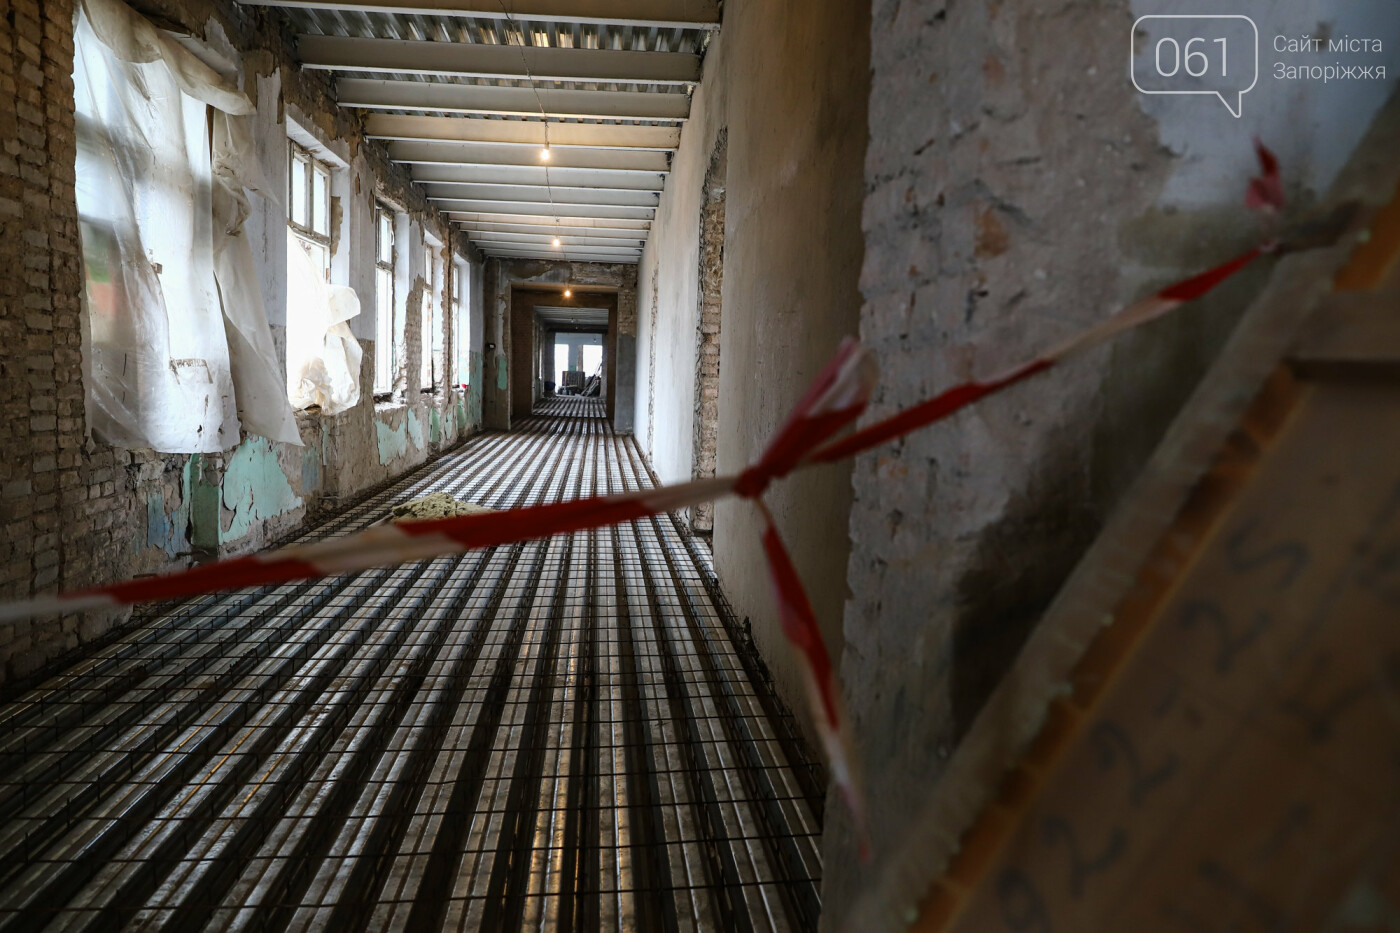 В Запорожье восстанавливают школу, которая пострадала во время масштабного пожара 5 лет назад, - ФОТОРЕПОРТАЖ , фото-40